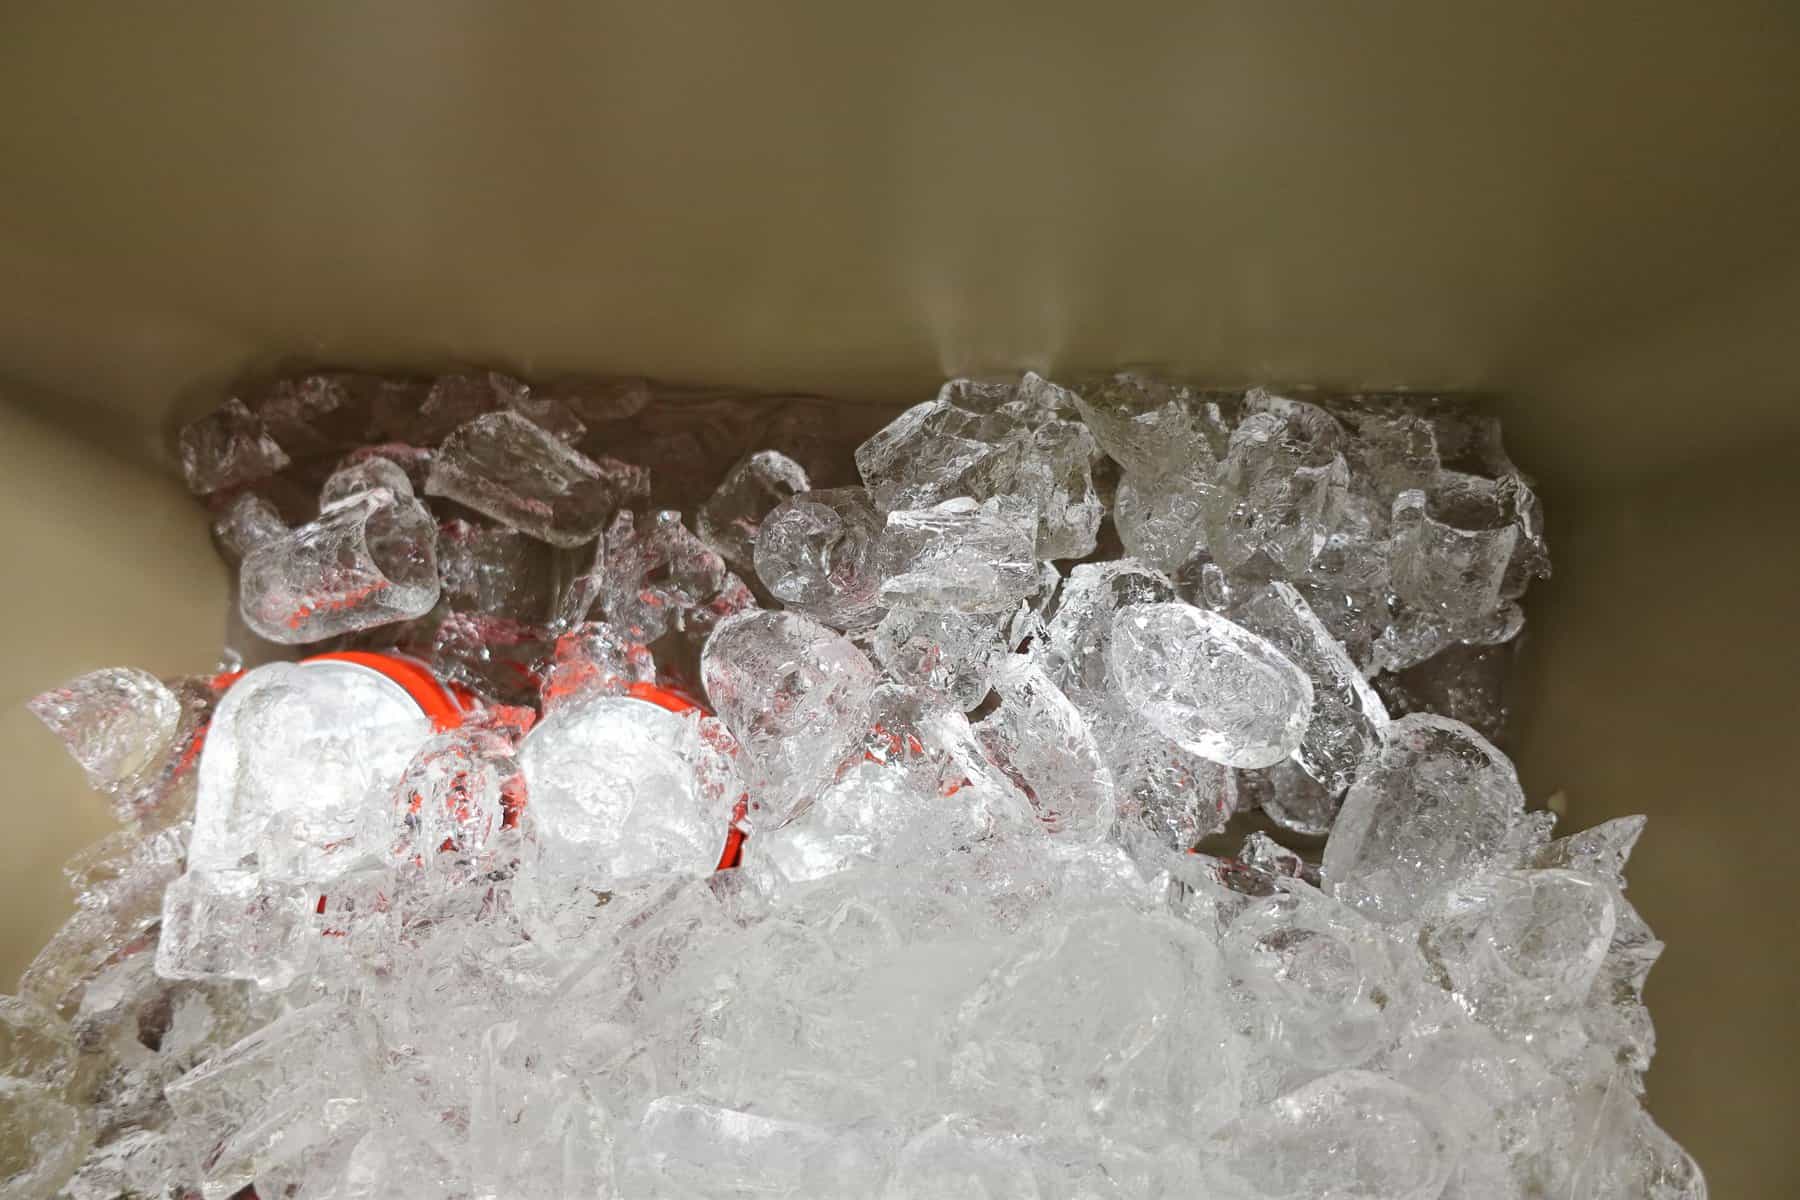 Petromax Kühlbox Test der Isolierung und Kühlung - Prüfung Eis und Schmelzwasser Innen Tag 4 (nach 96 Stunden)